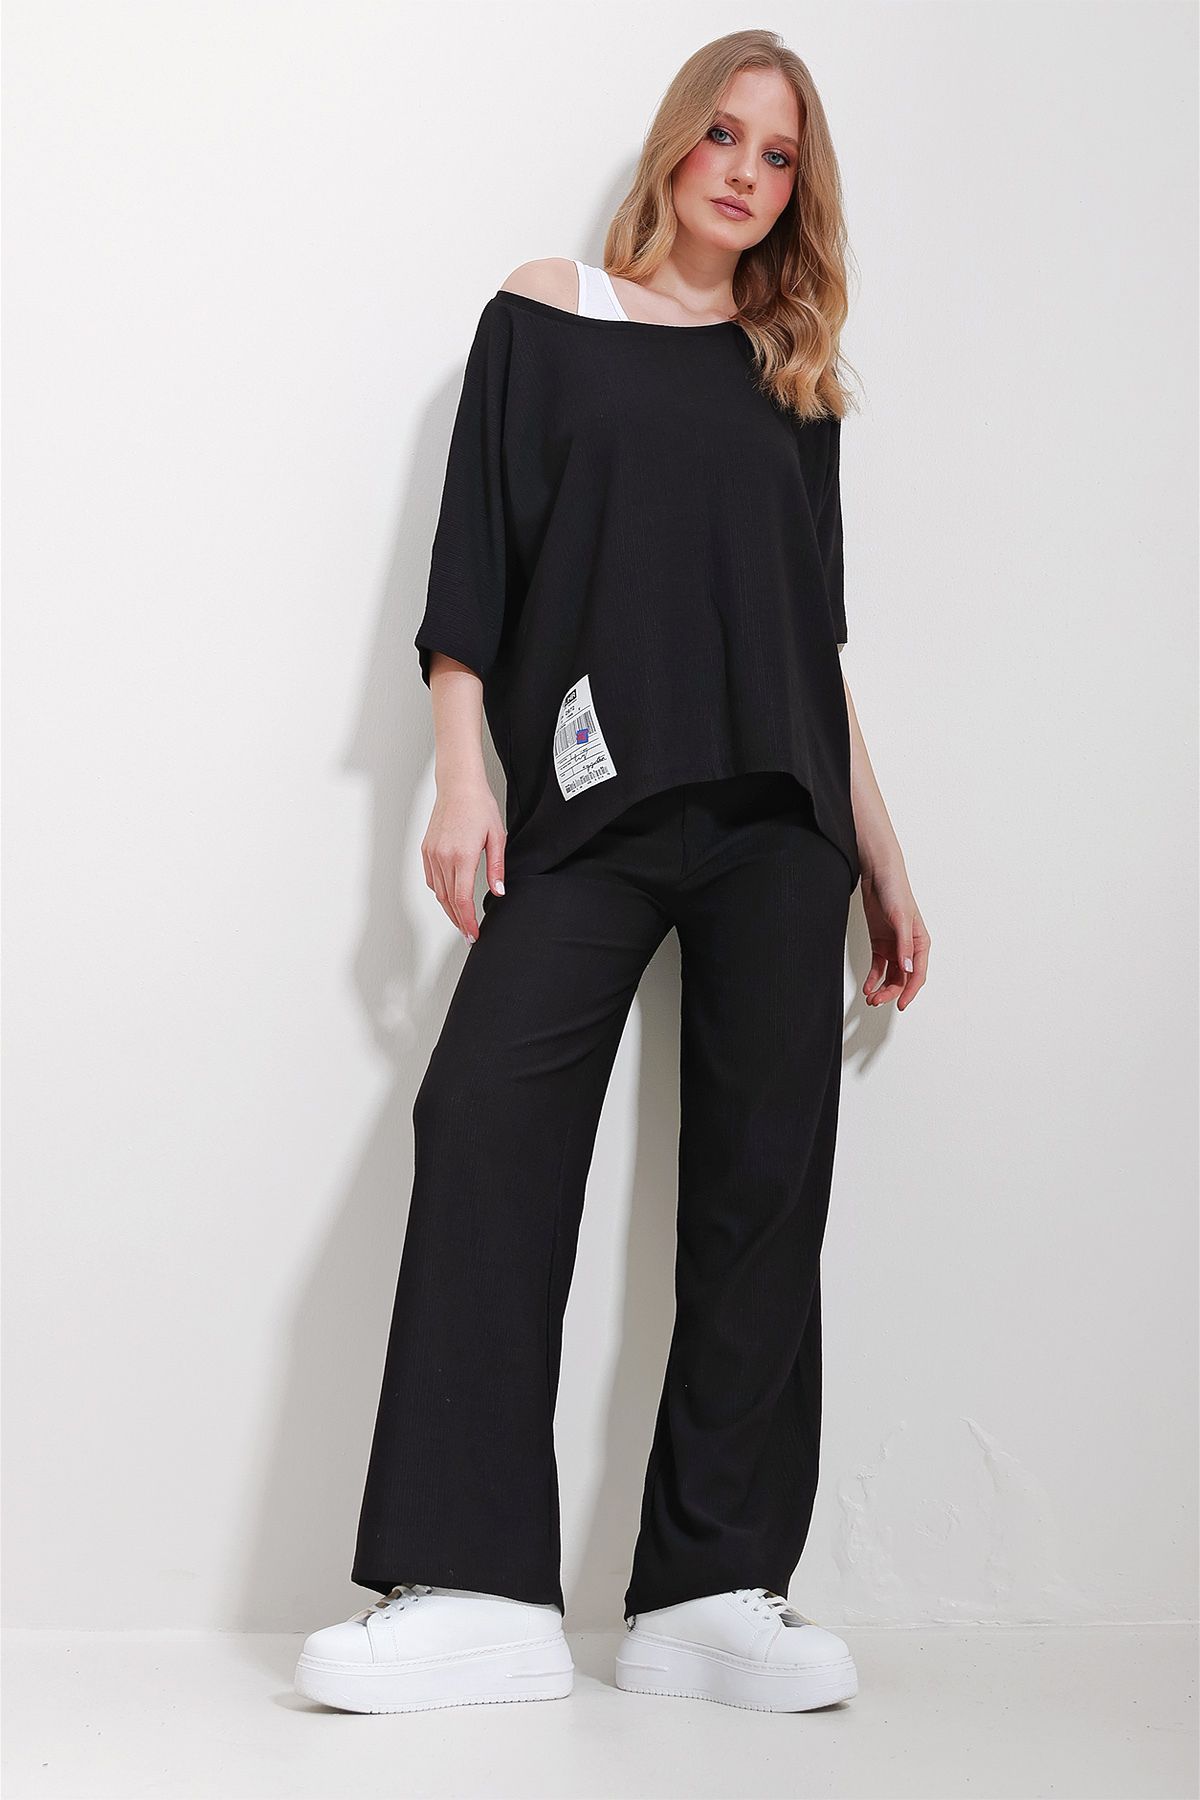 Trend Alaçatı Stili Kadın Siyah Kayık Yaka Bluz Ve Palazzo Pantolon 3'Lü Takım ALC-X11605